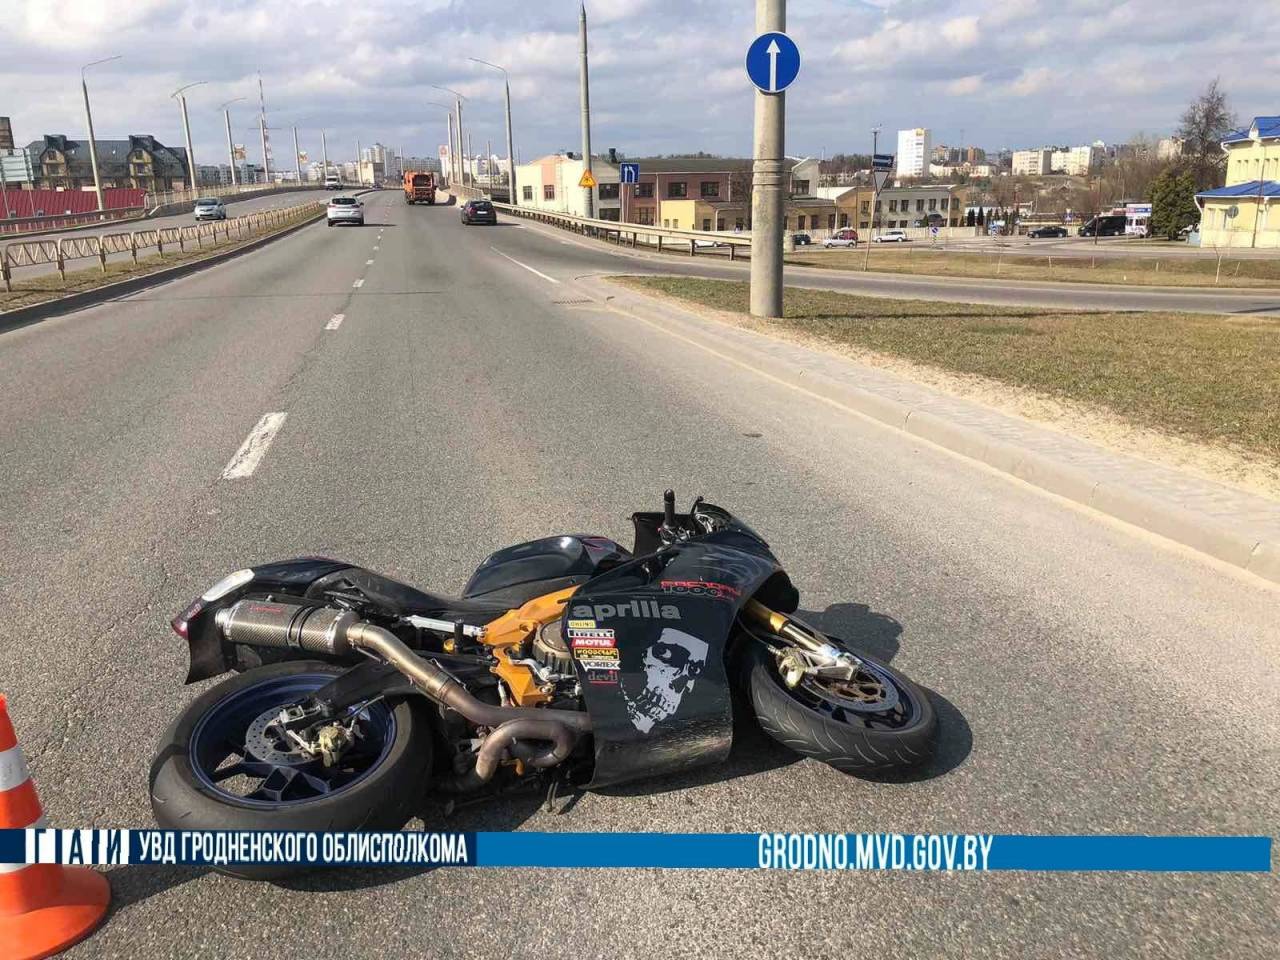 С начала года в Гродненской области произошло 4 ДТП с участием мотоциклистов — в каждом из них они пострадали по своей вине